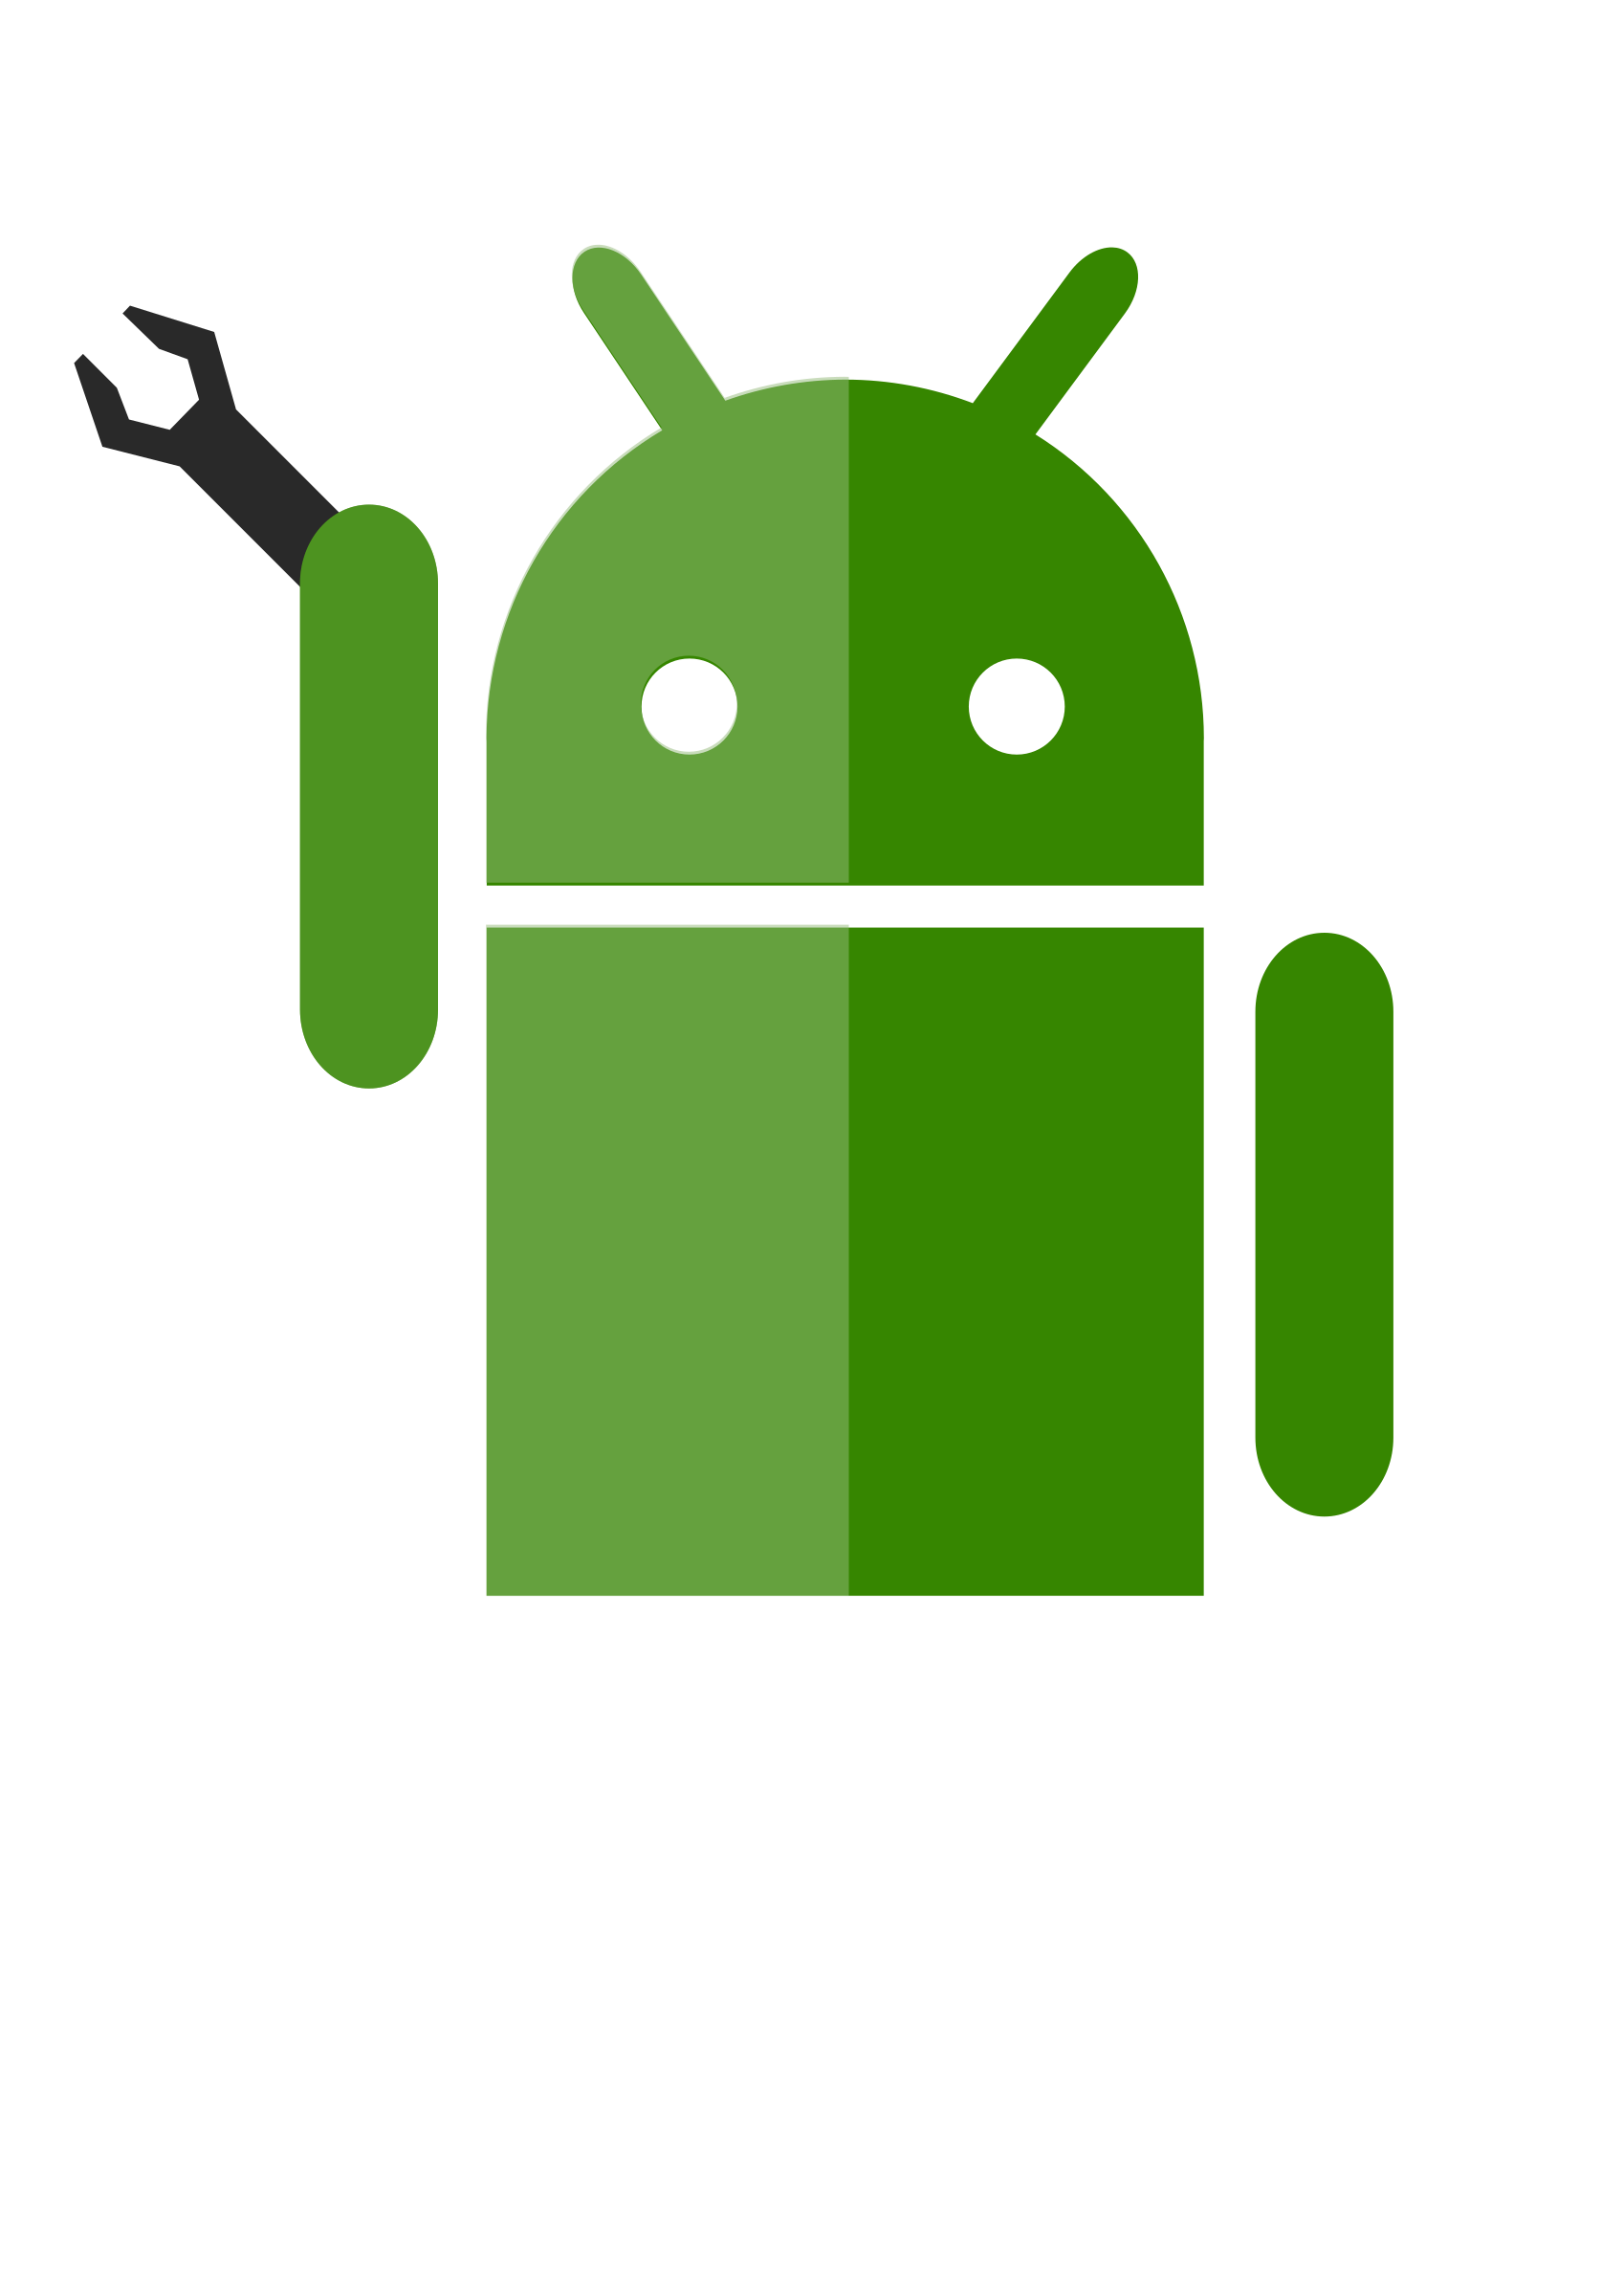 Андроид. Логотип андроид. Андро. Значок андроид вектор.